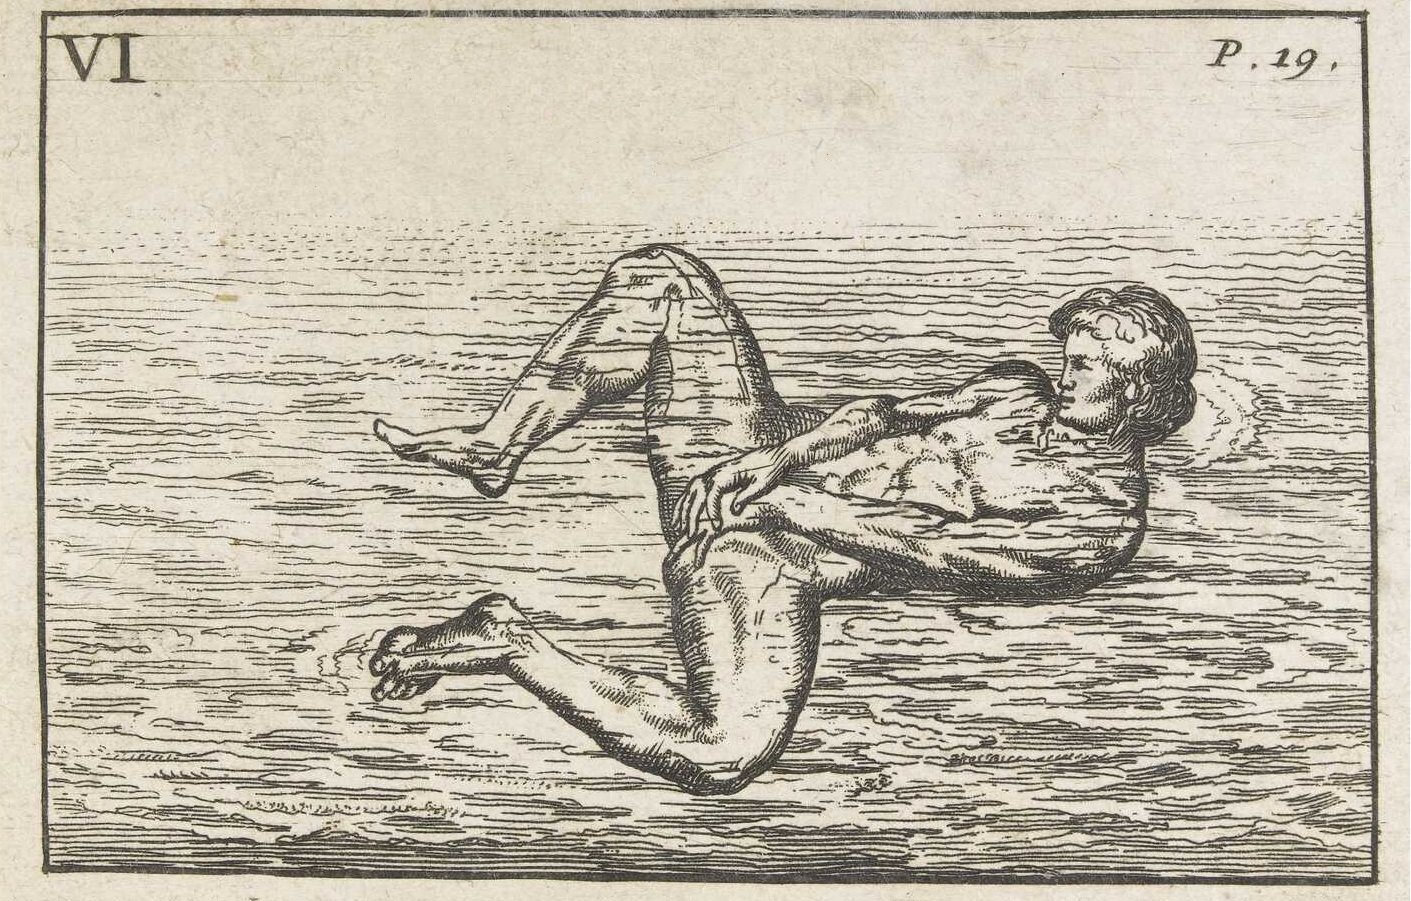 El arte de nadar ilustrado por Proper Figures en 1696